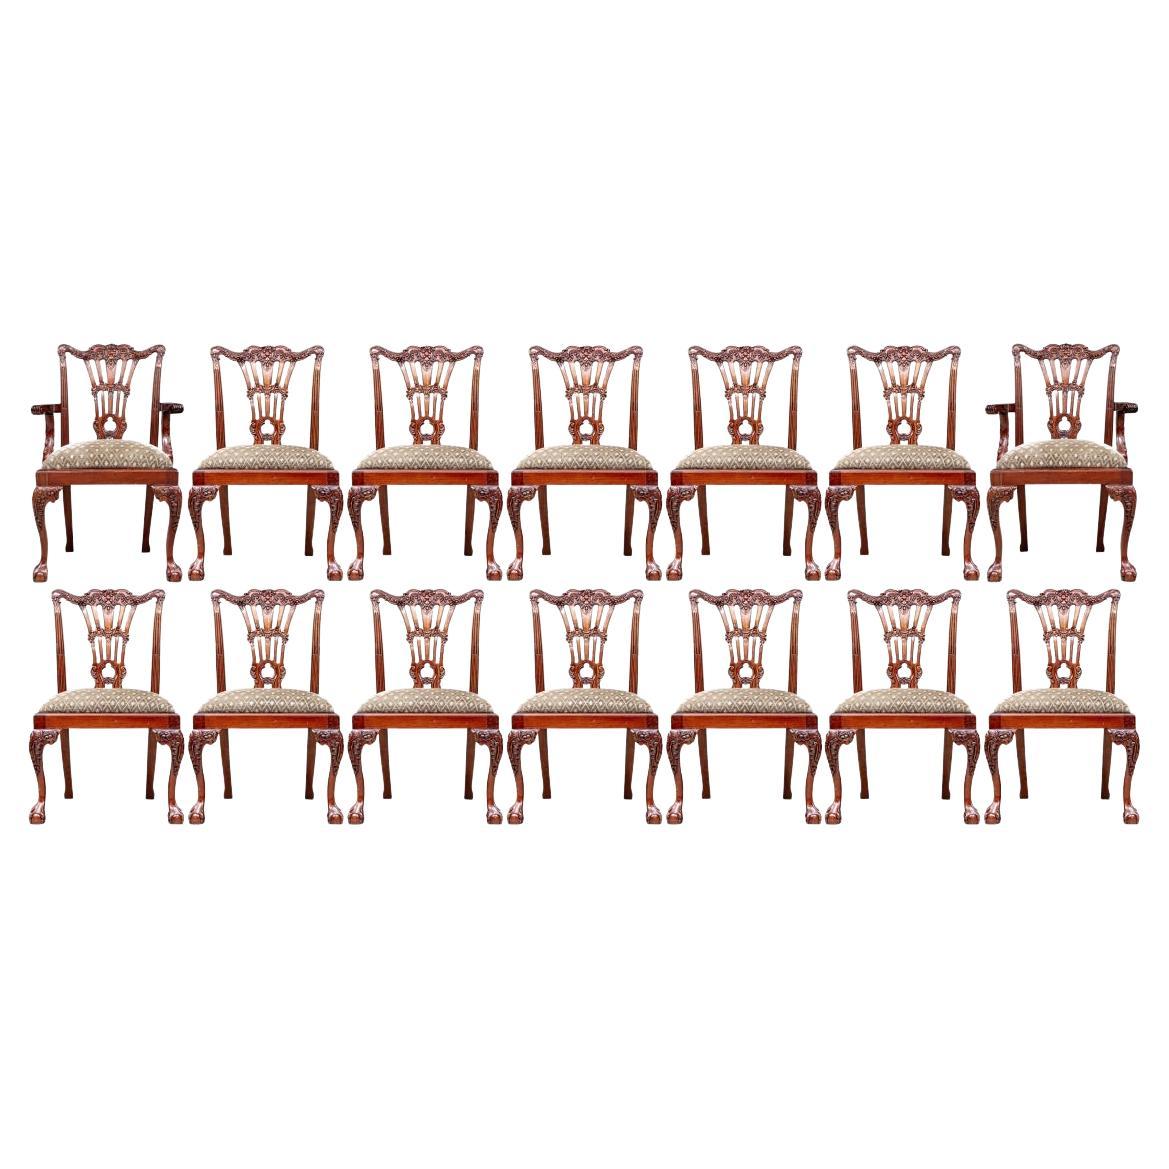 Feiner Satz von 14 geschnitzten Esszimmerstühlen im georgianischen Stil